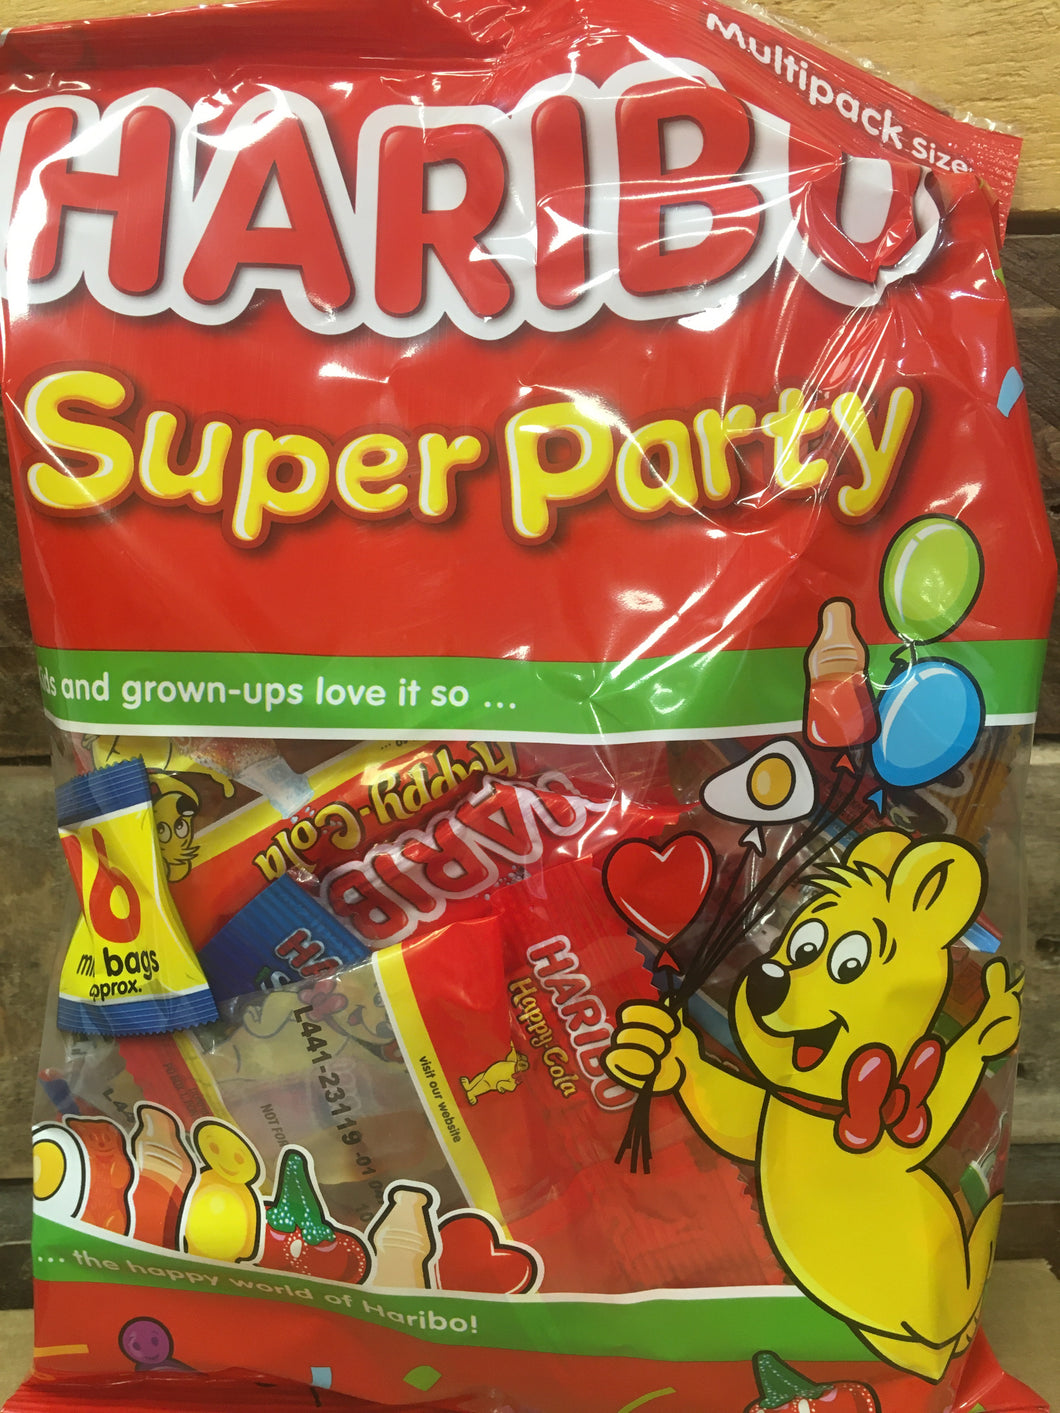 48x Haribo Super Party Mini Bags (3 Packs of 16 Mini Bags)